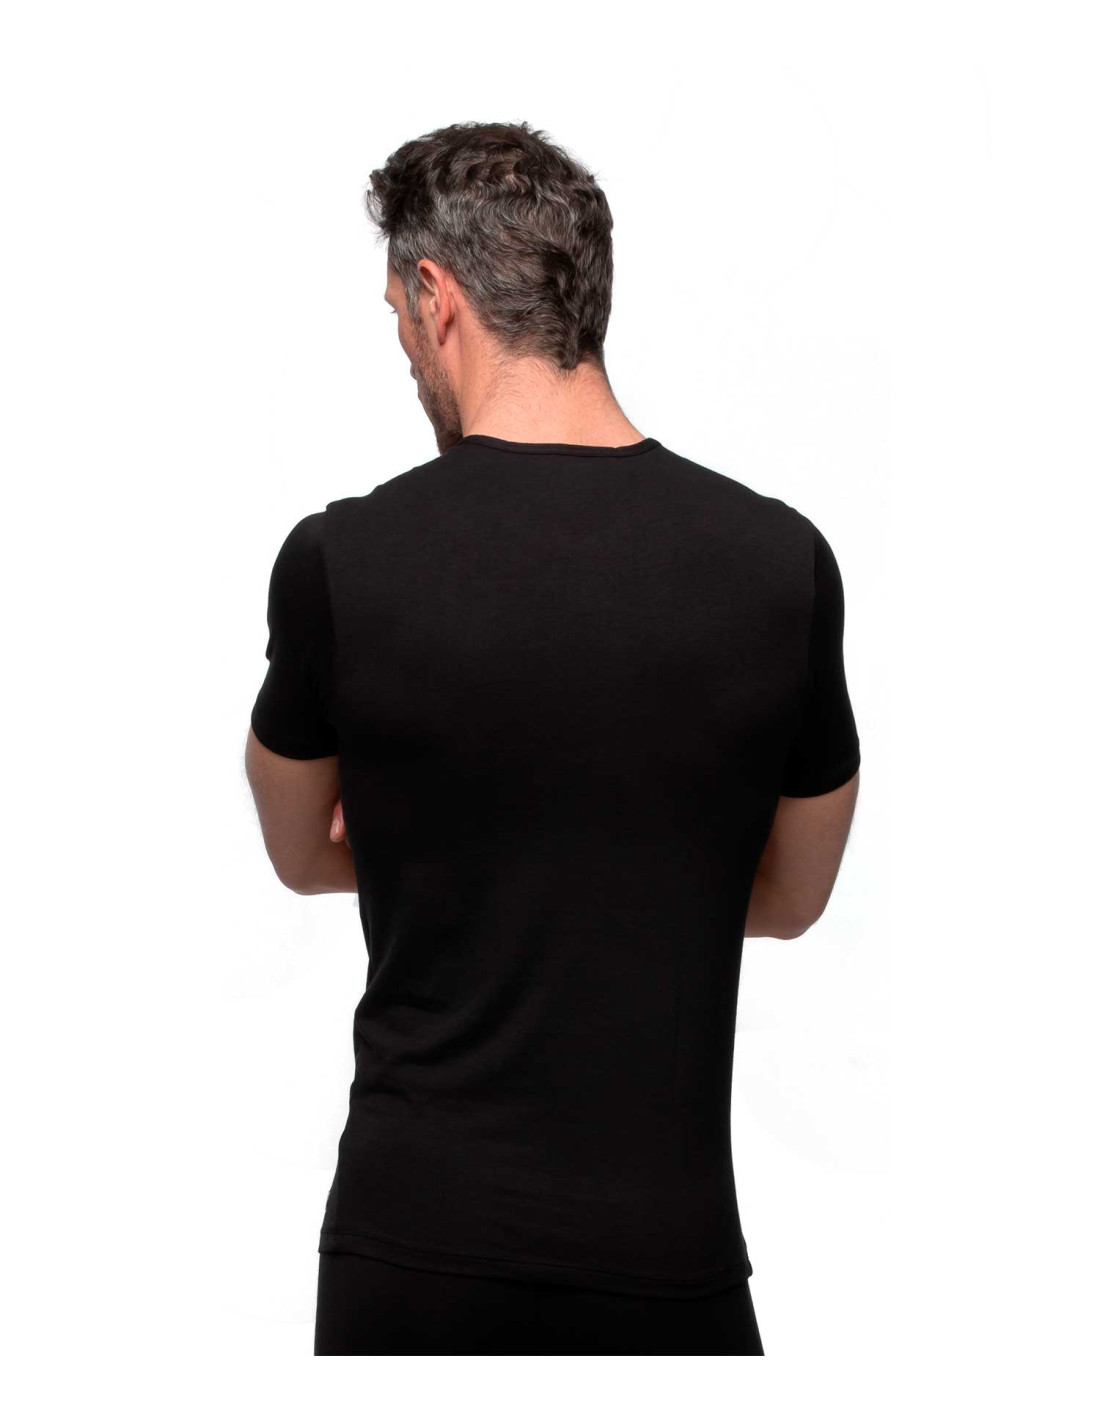 Camiseta interior hombre pico manga corta - Comodidad - Interior afelpado